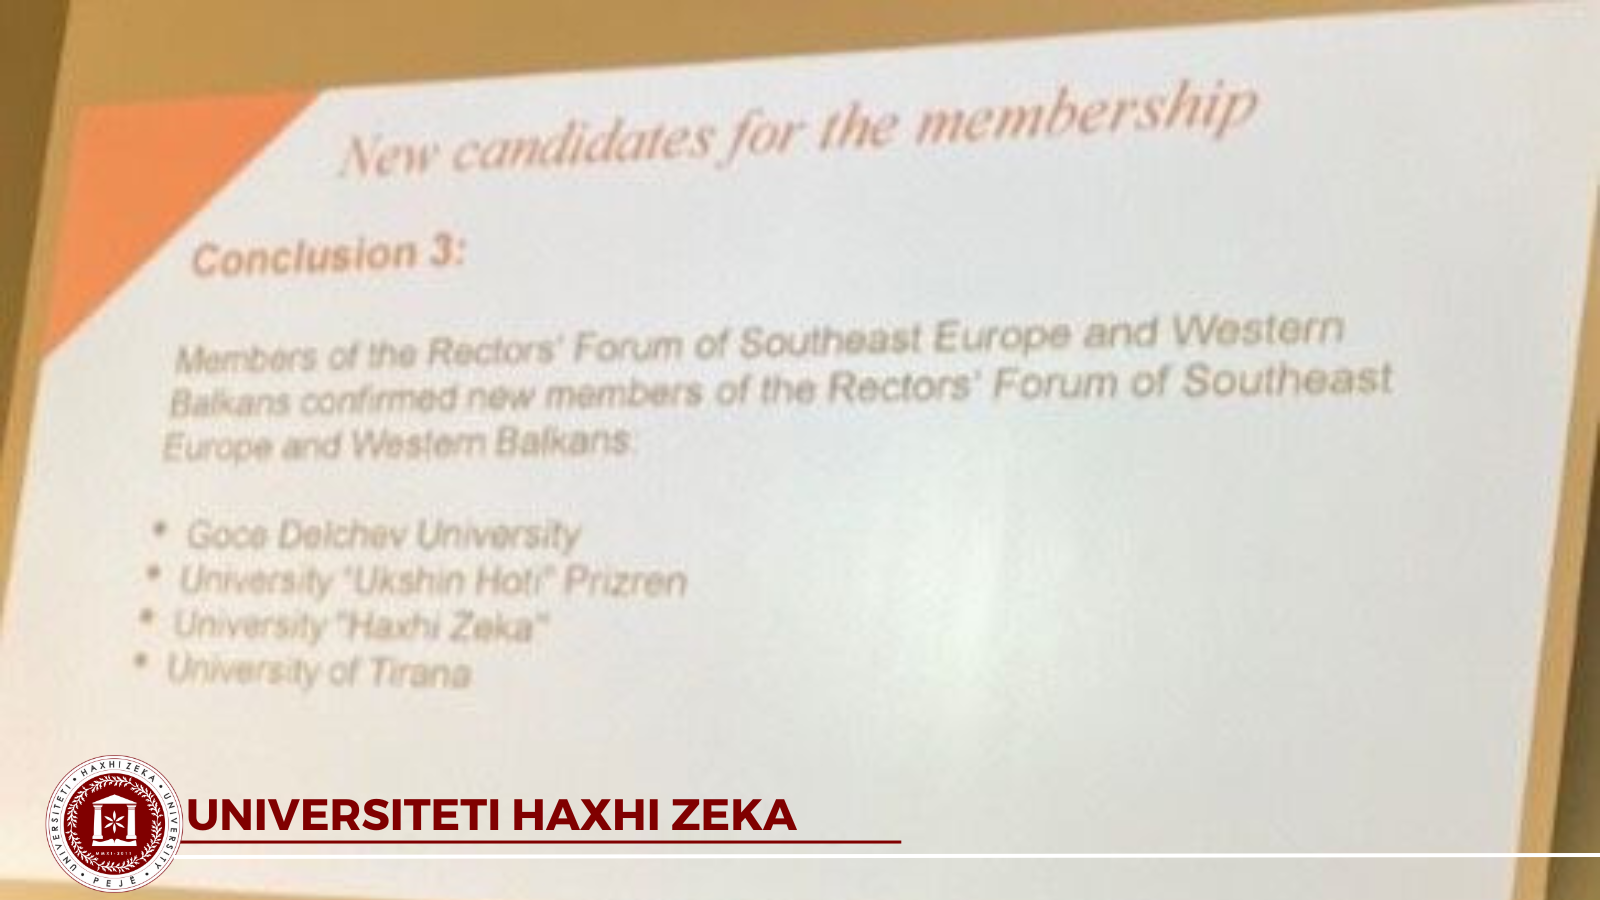 universiteti haxhi zeka anetaresohet ne forumin e rektoreve te evropes juglindore dhe ballkanit perendimor